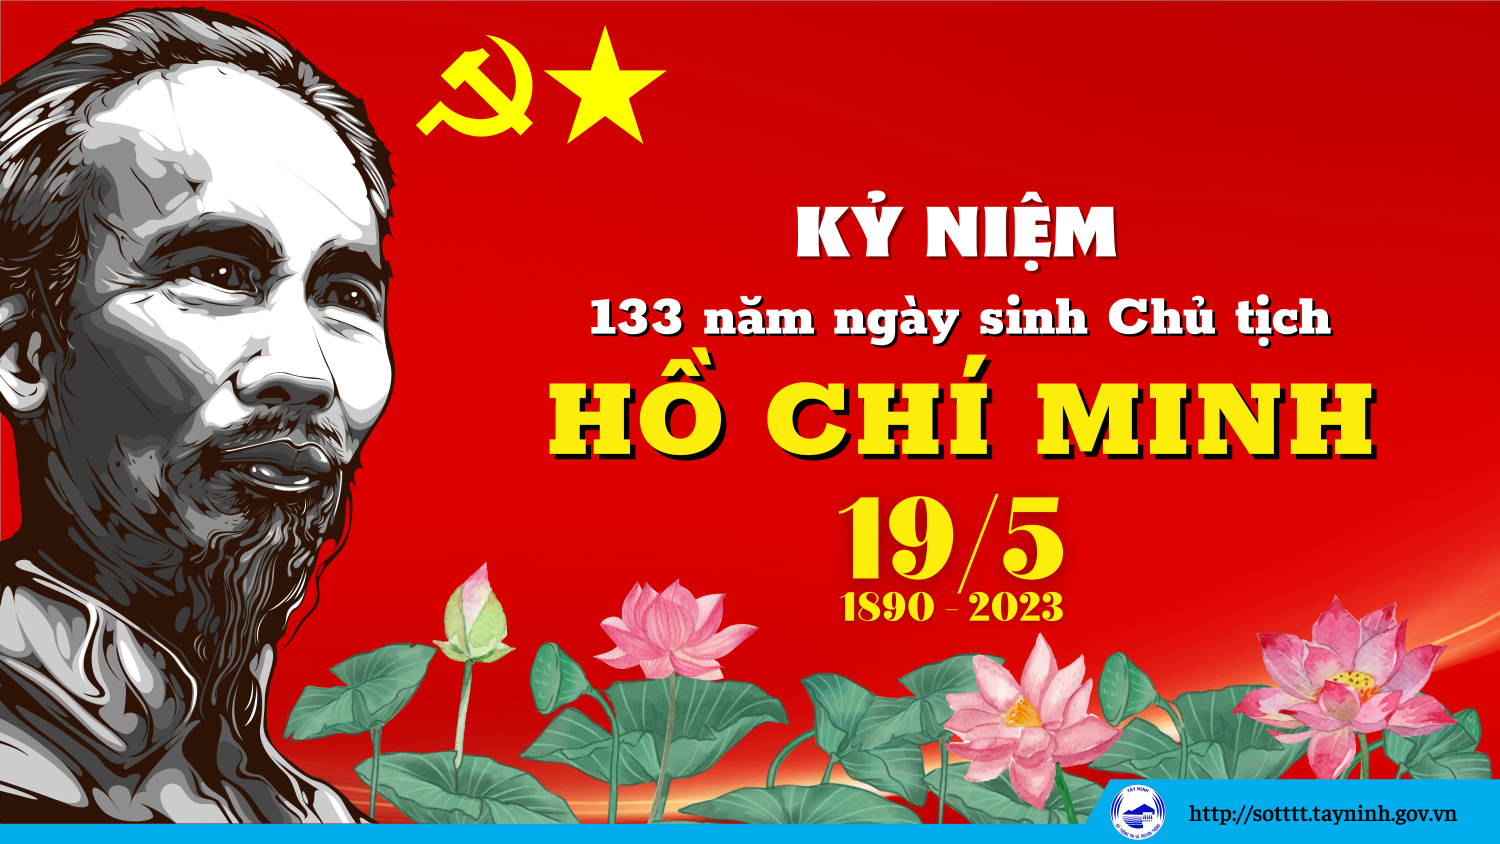 Chào mừng kỷ niệm 133 năm Ngày sinh Chủ tịch Hồ Chí Minh (19/5/1890-19/5/2023).